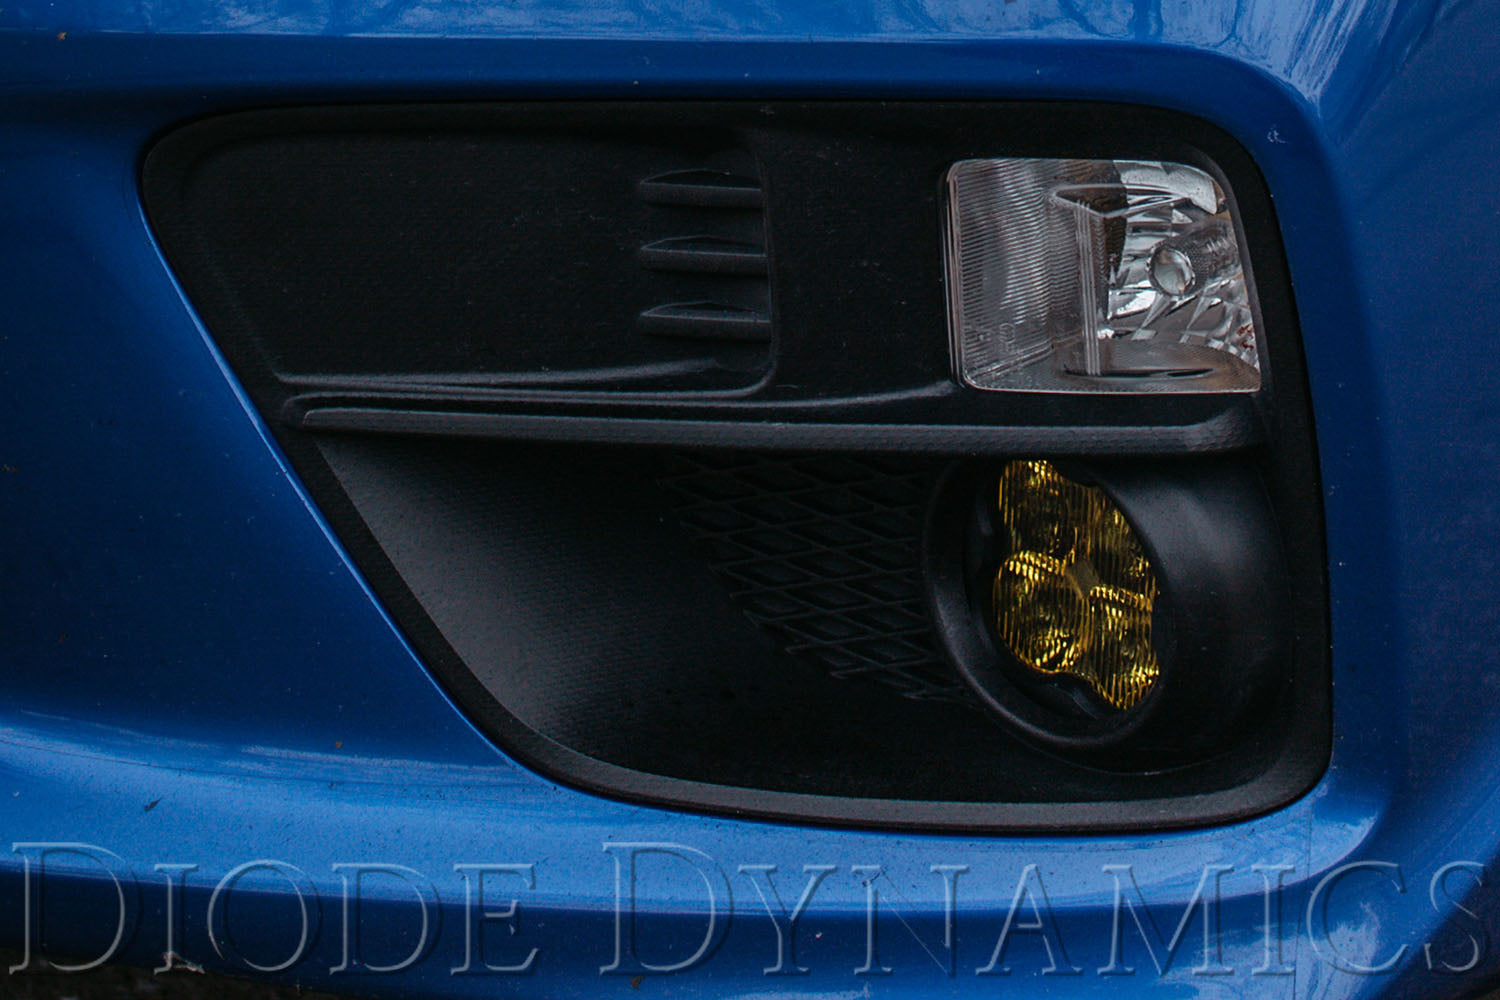 SS3 LED Fog Light Kit for 2008-2009 Ford Taurus X White SAE/DOT Driving Sport Diode Dynamics